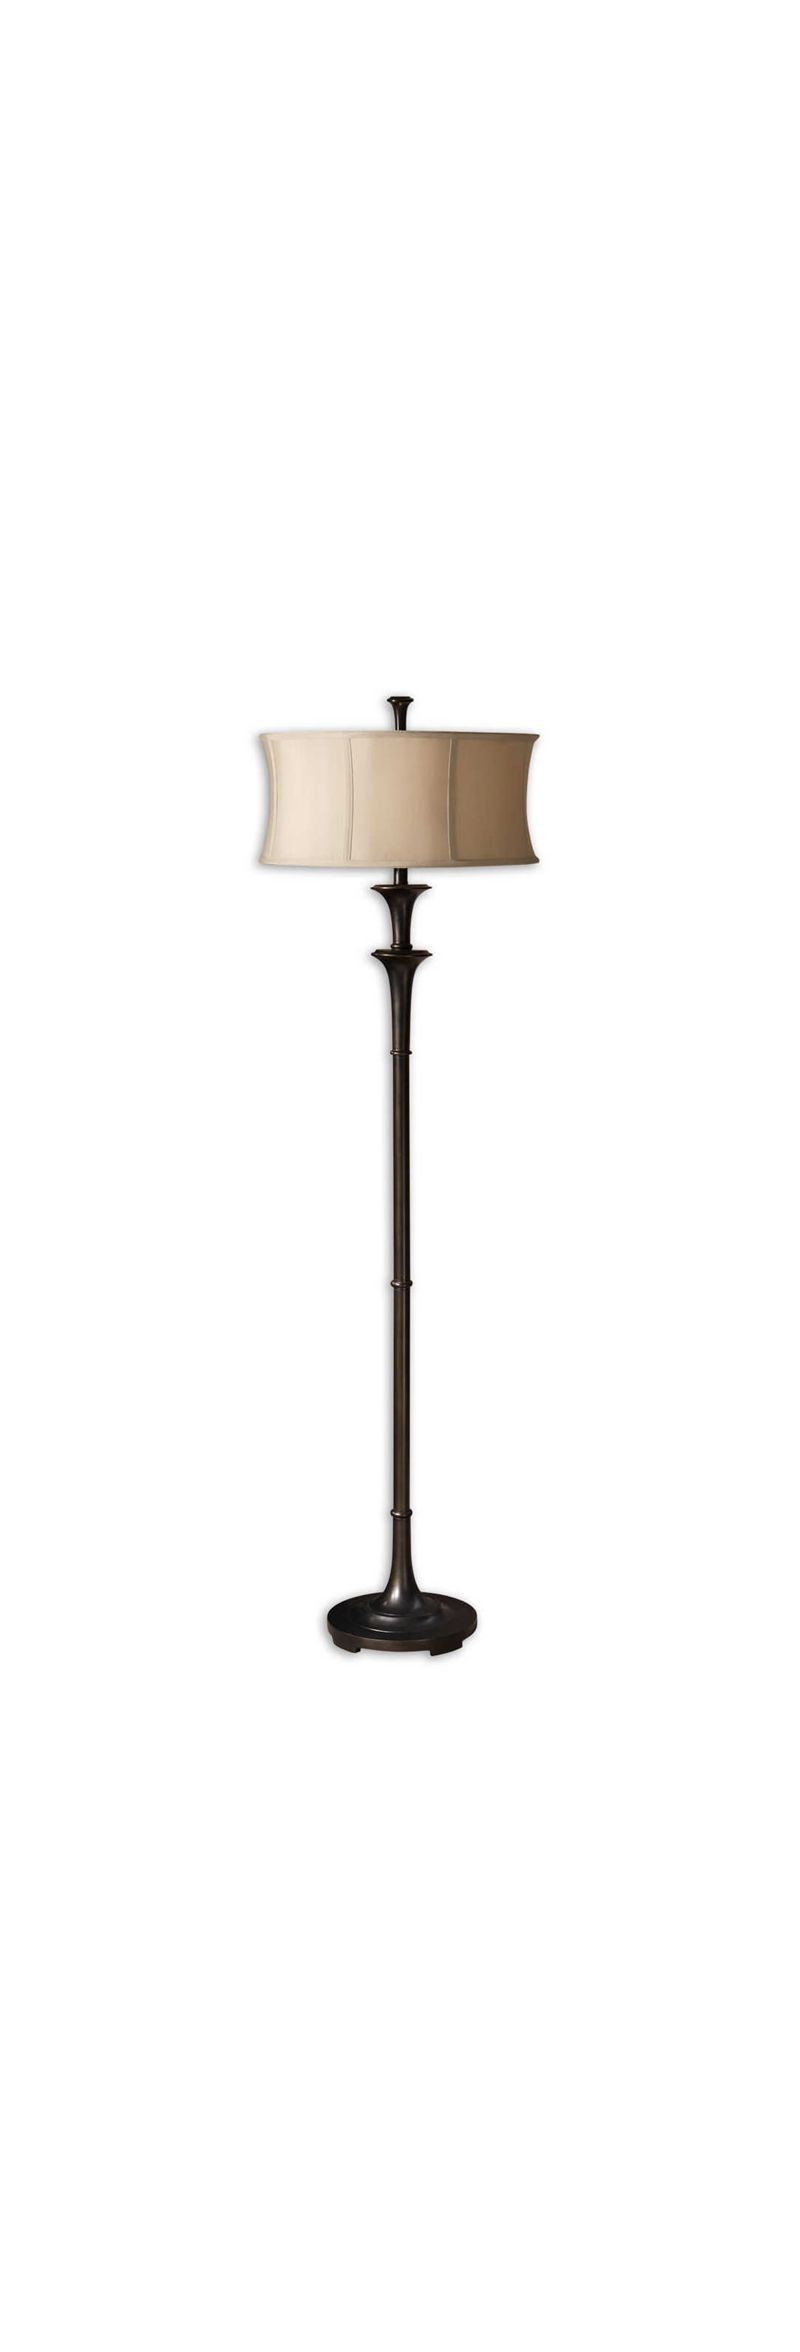 Uttermost Brazoria Floor Lamp